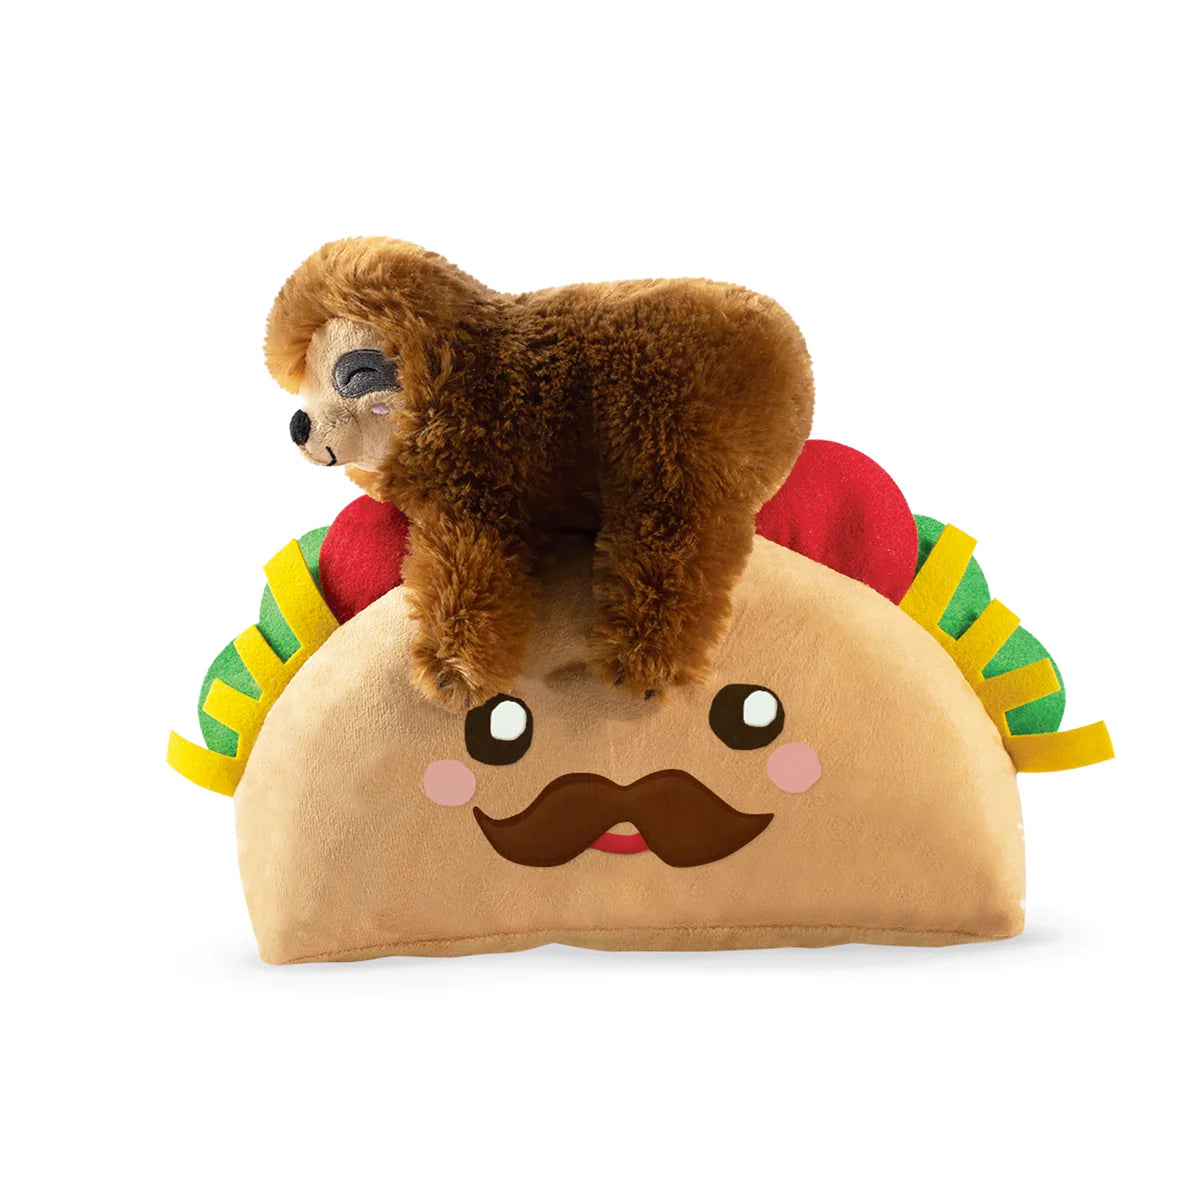 Fringe Studio Dog Squeaker Toy - Taco Sloth